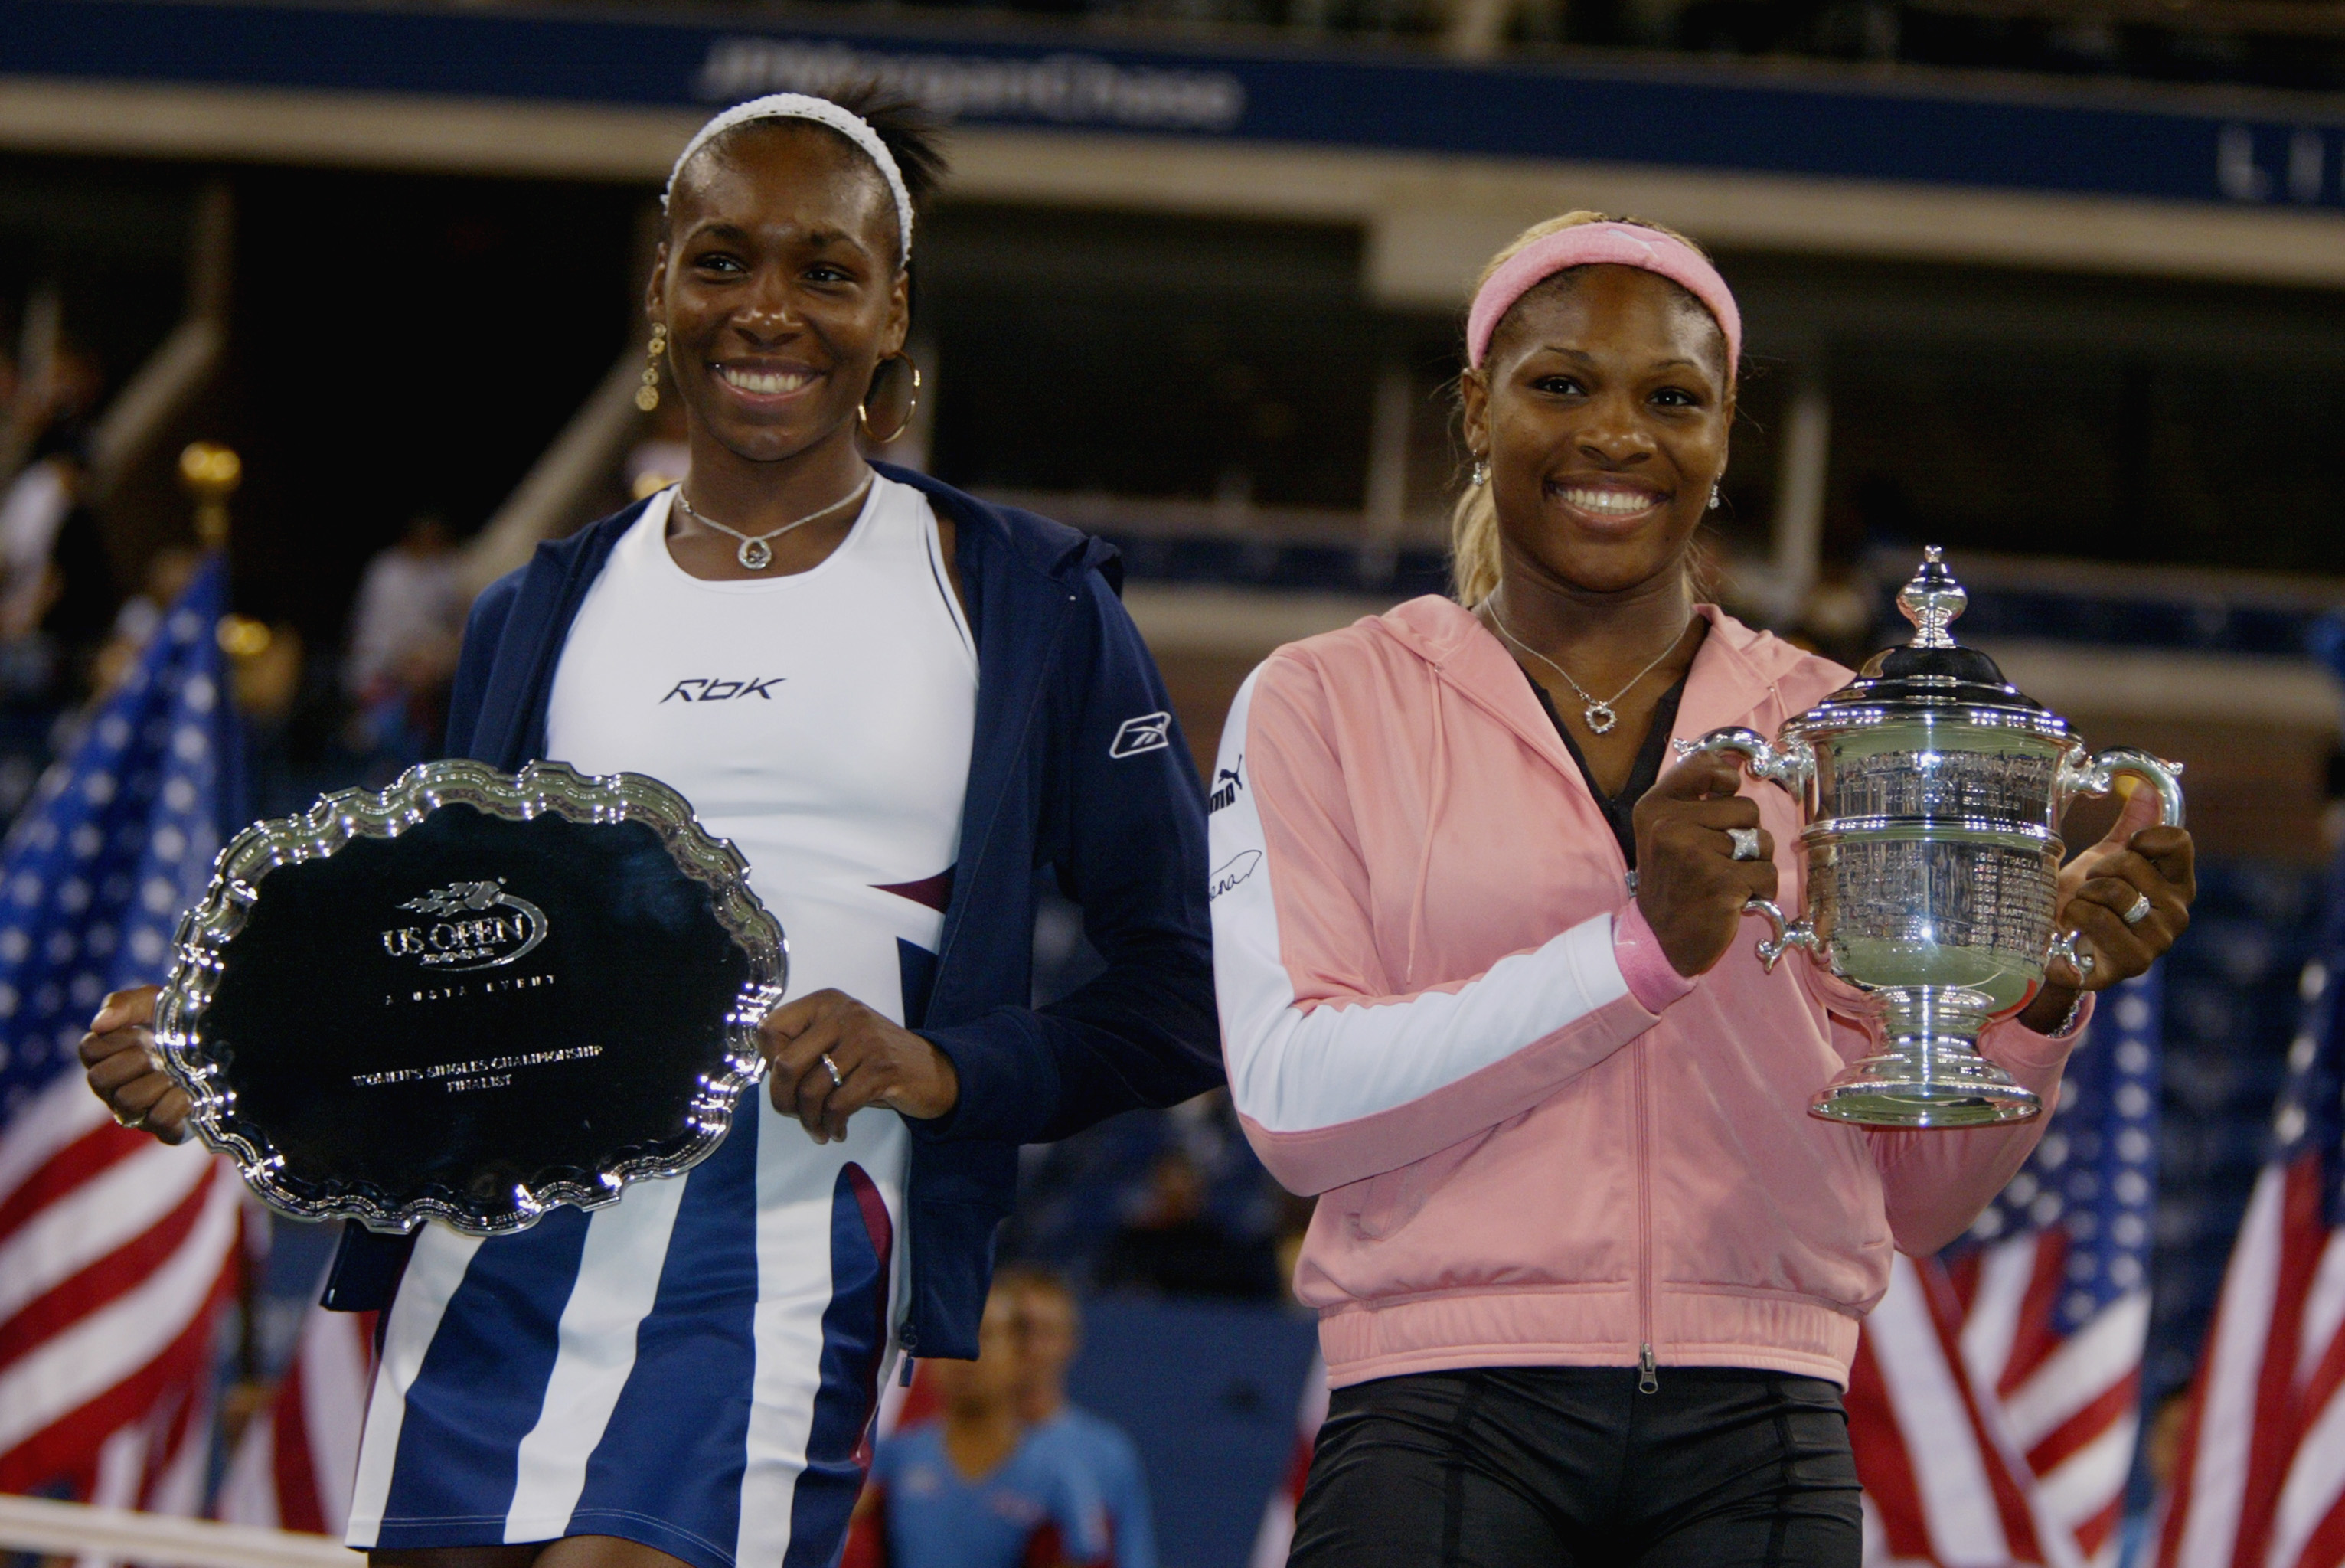 La rivalità tra Serena e Venus Williams